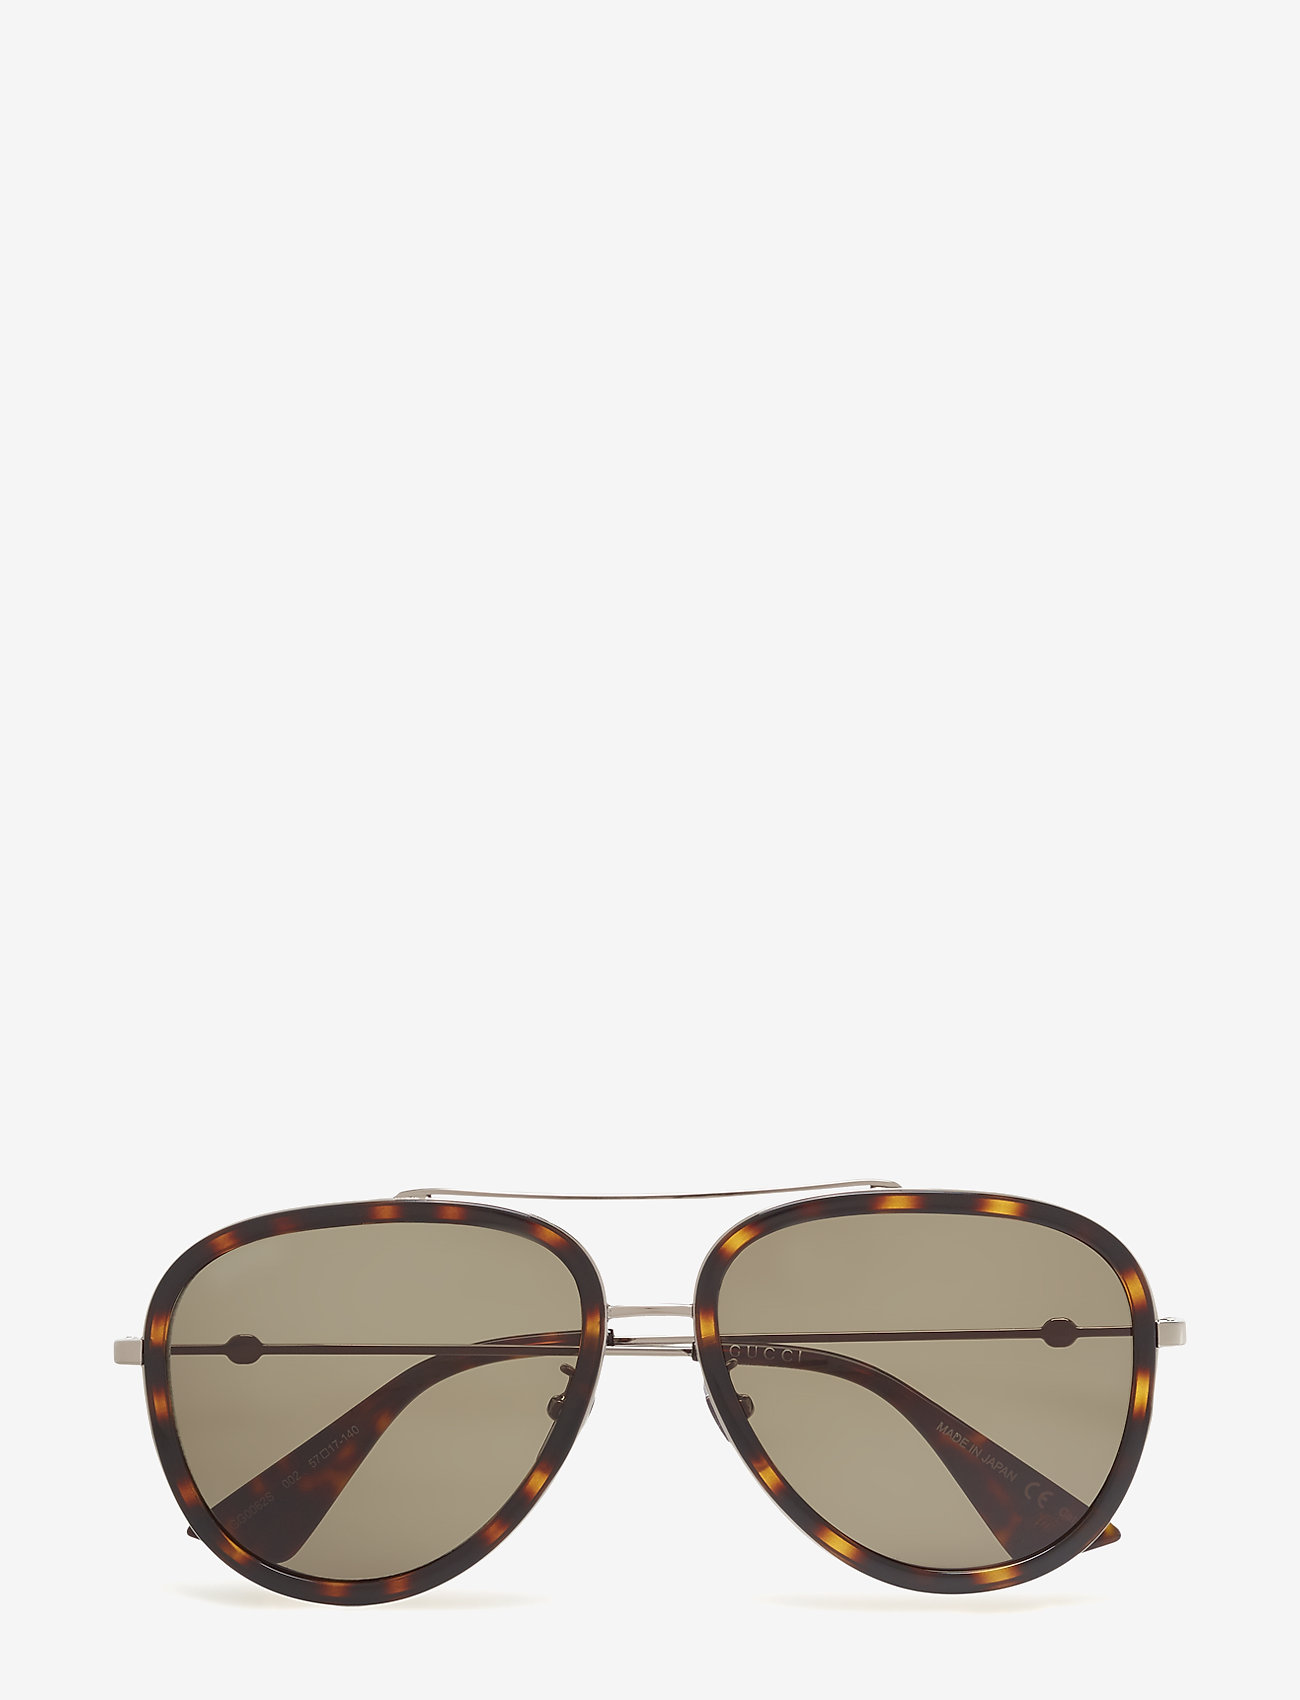 316 €) - Gucci Sunglasses - | Boozt 